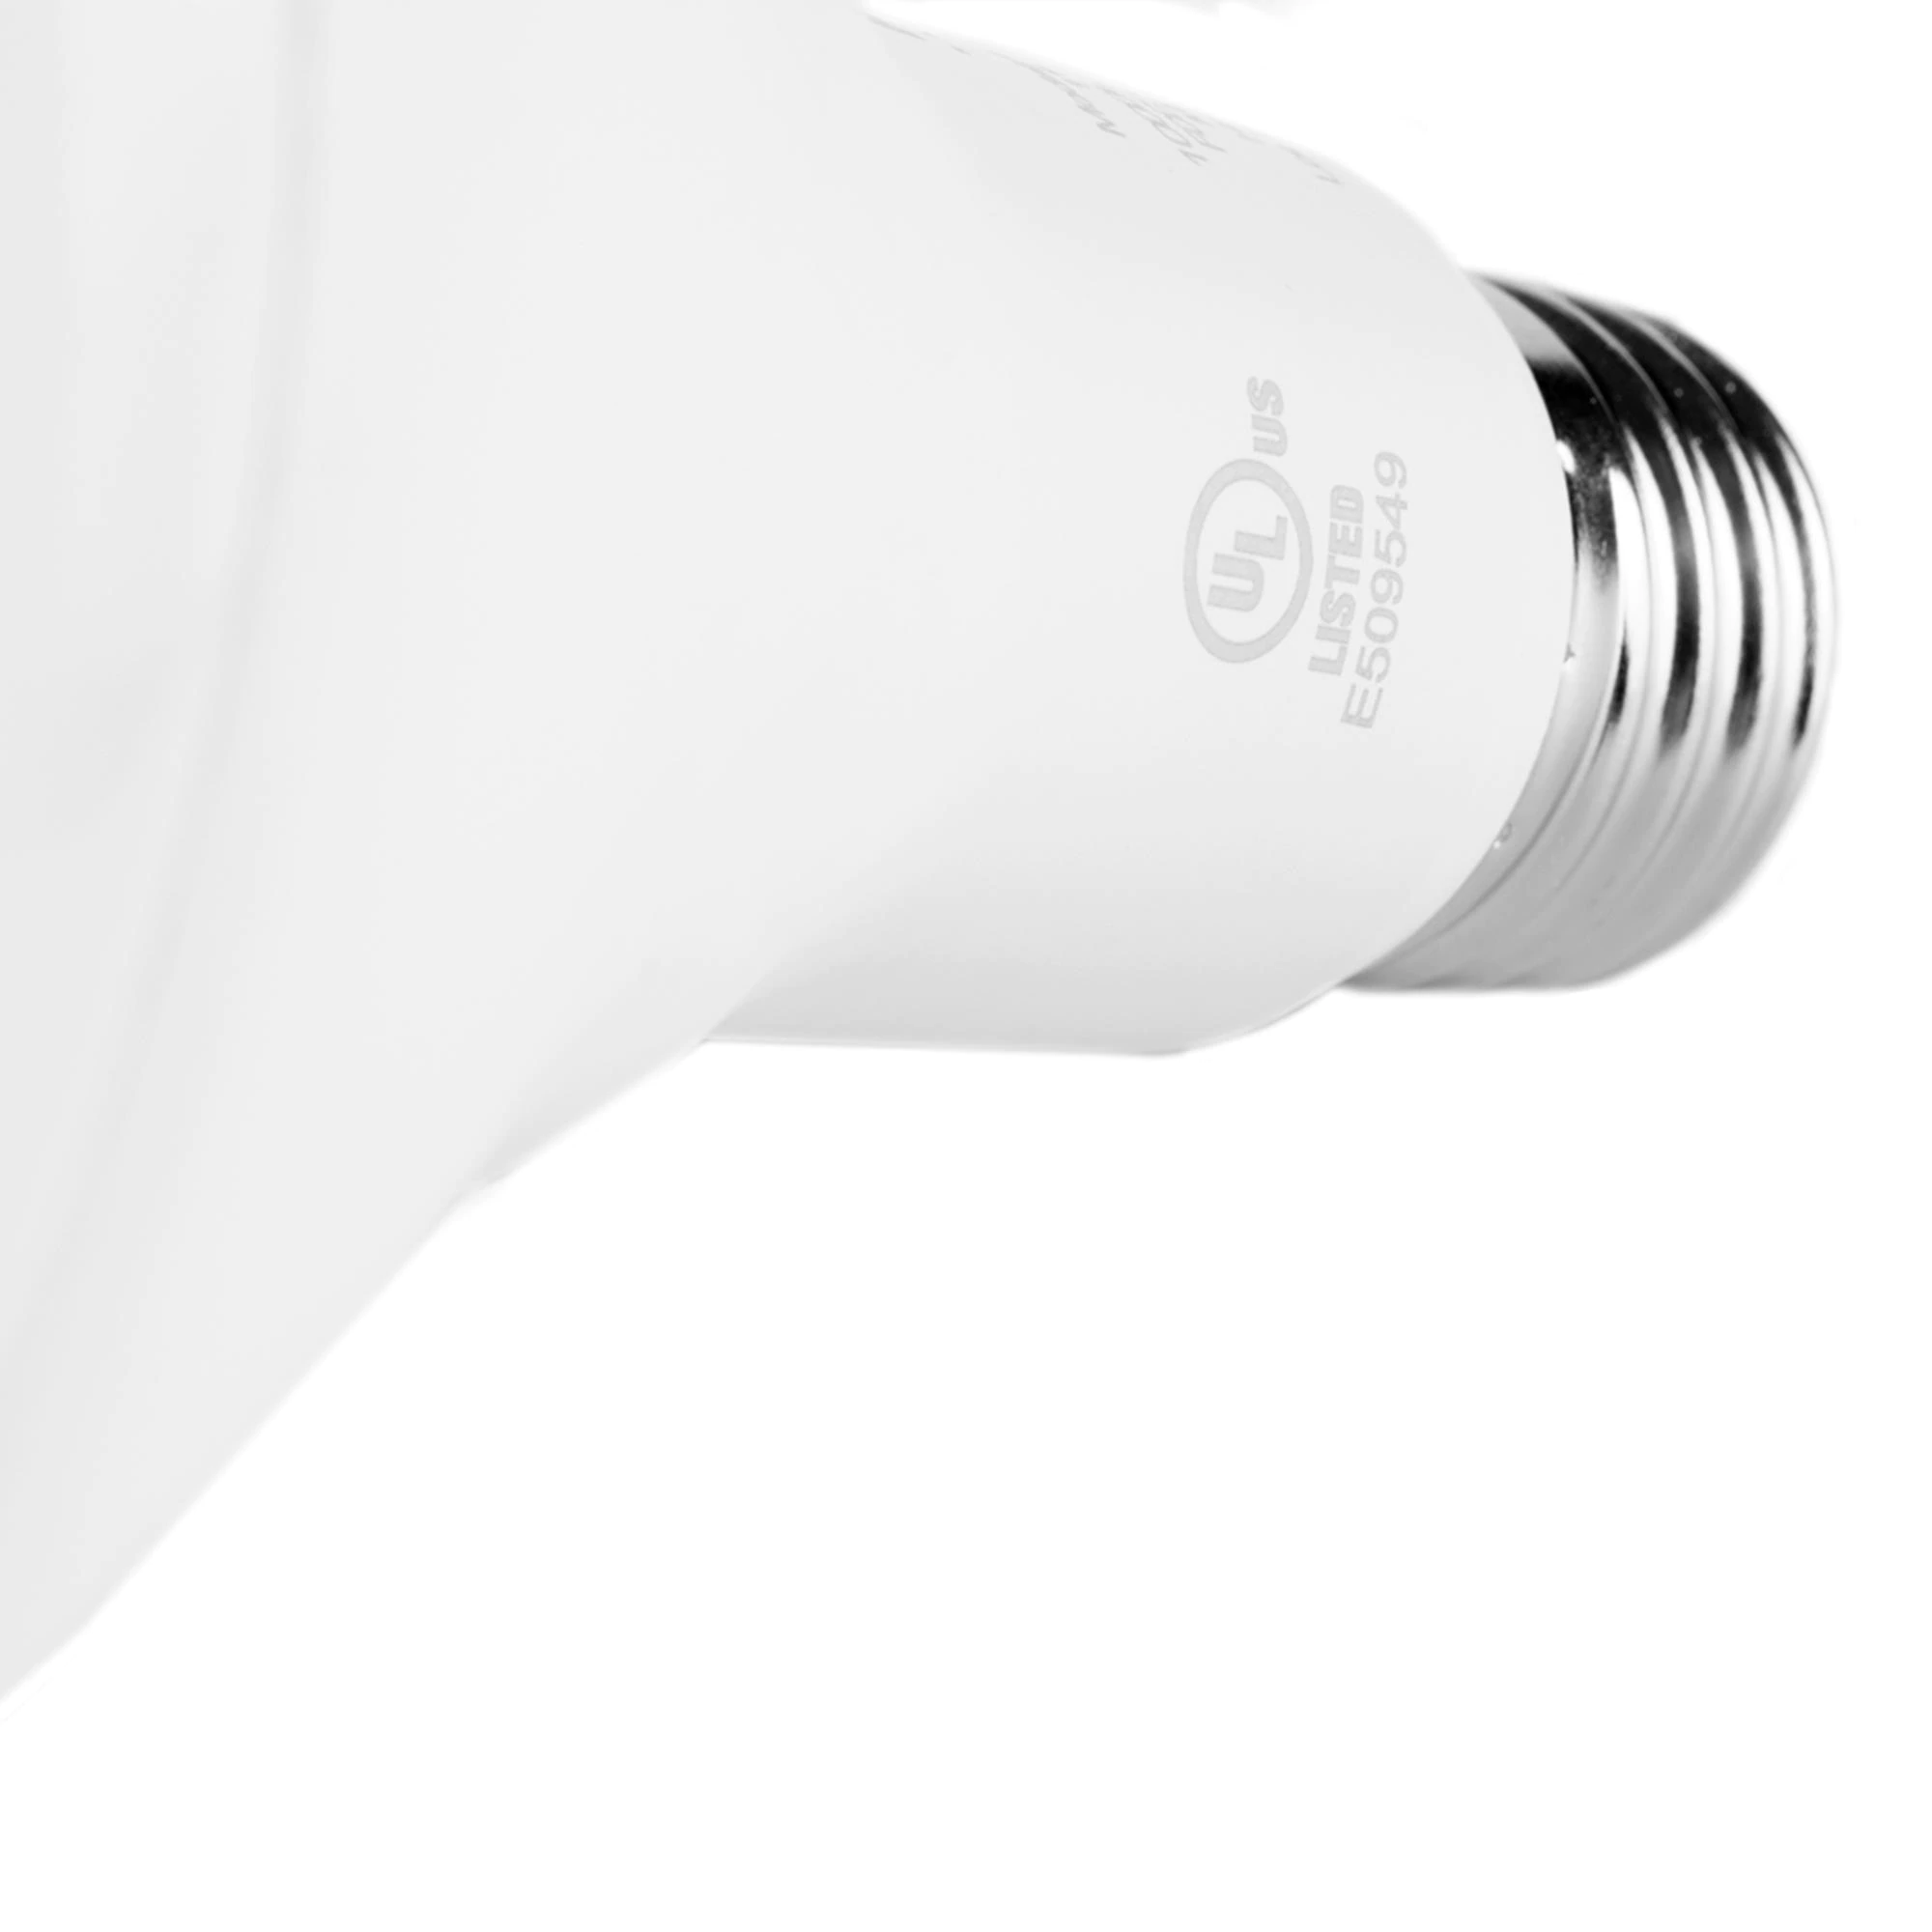 Nexxt Solution Smart Wifi Floodlamp Bulb in White s BR30/E26 (2 Pack)